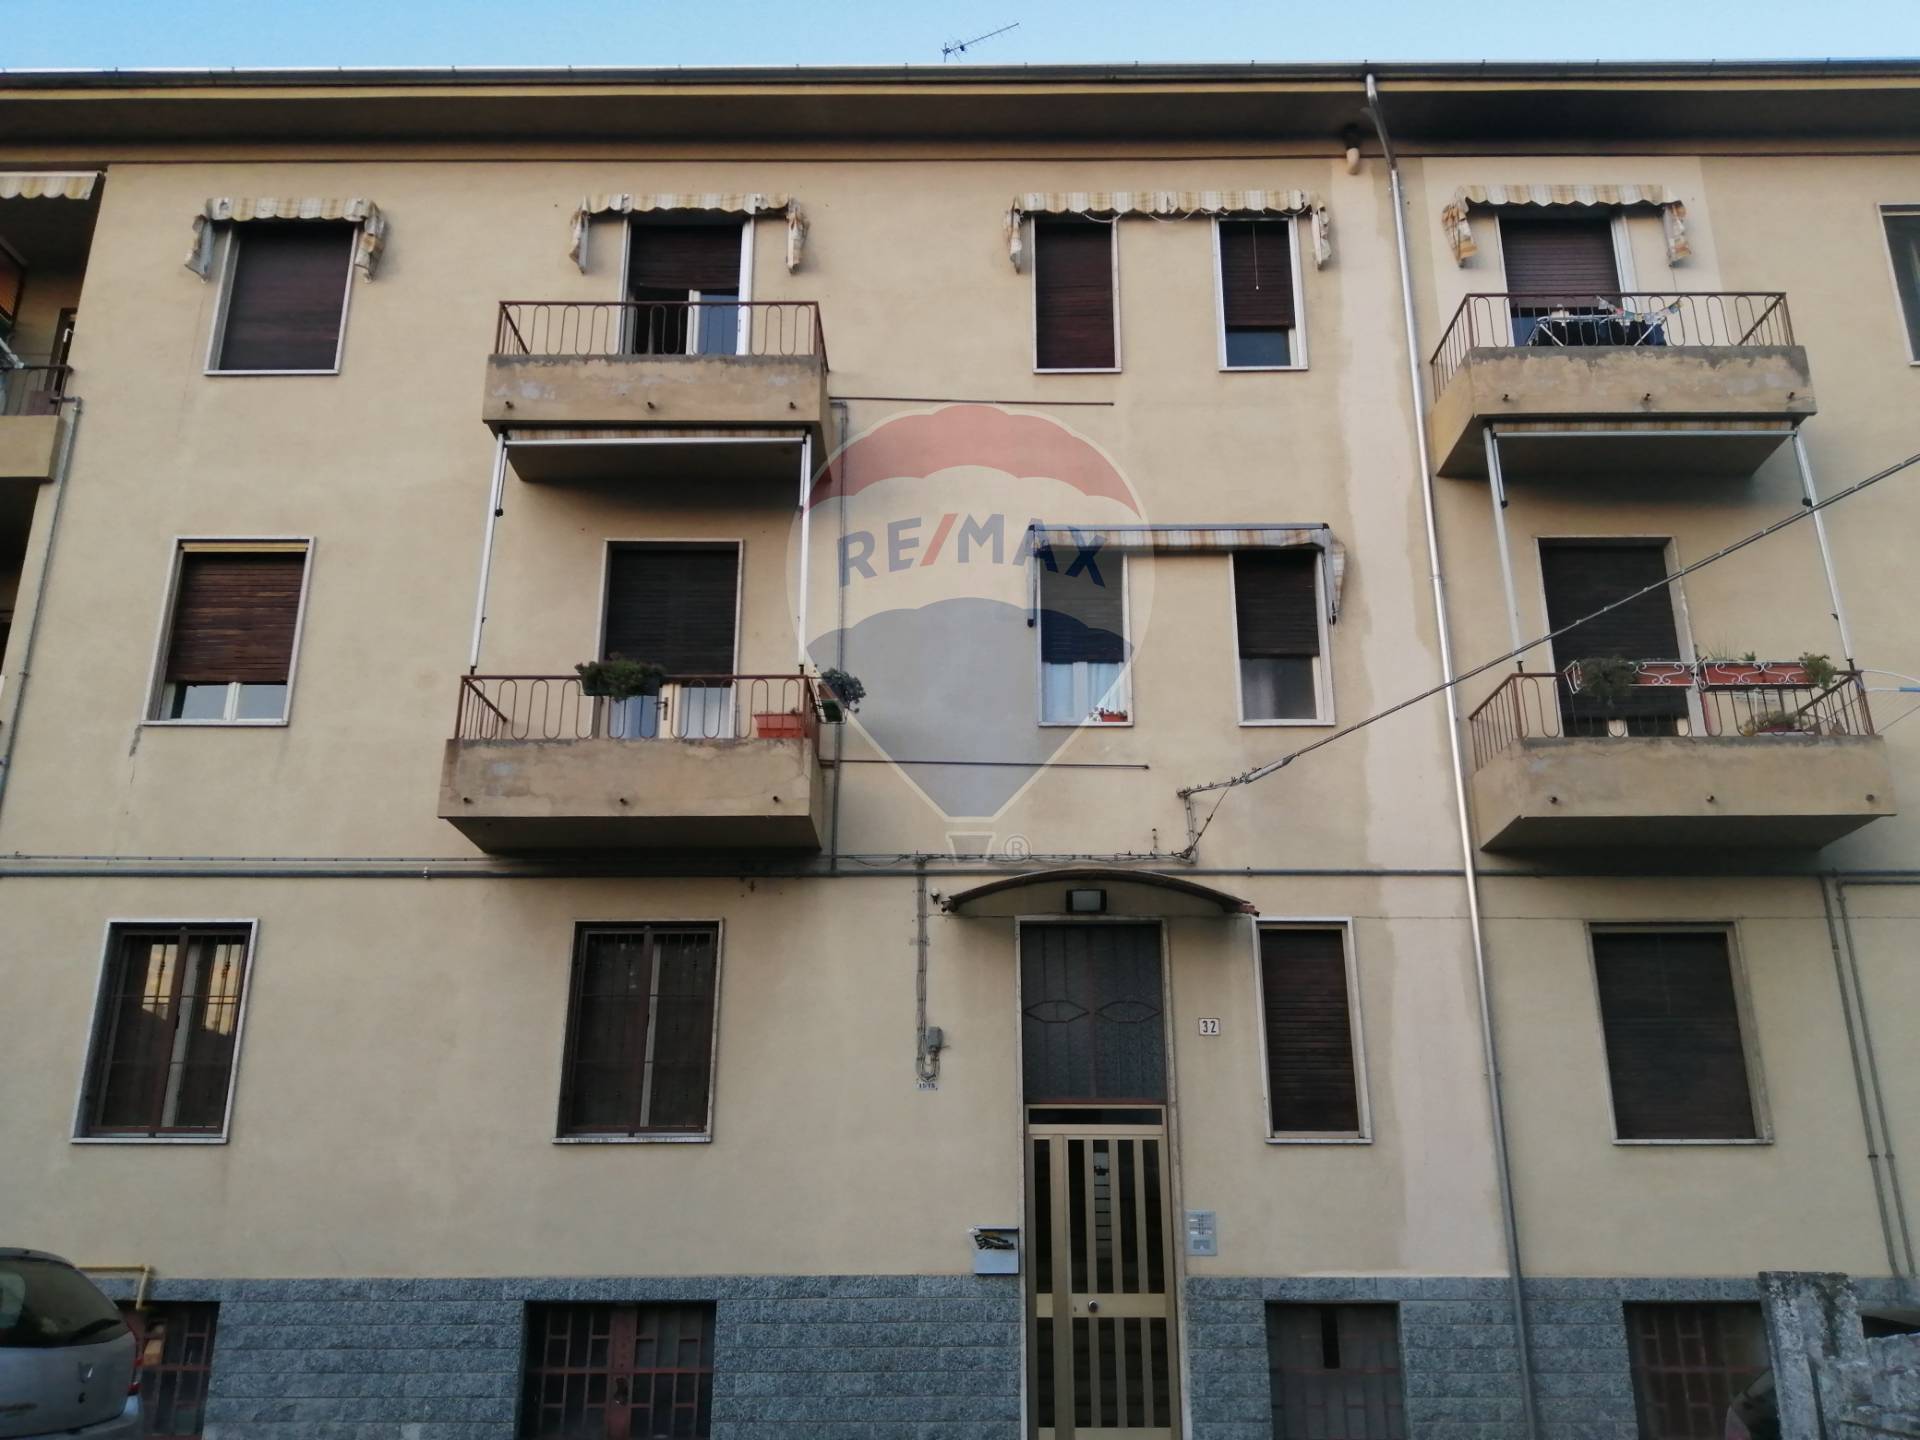 Appartamento in vendita a Valenza, 2 locali, prezzo € 22.000 | CambioCasa.it